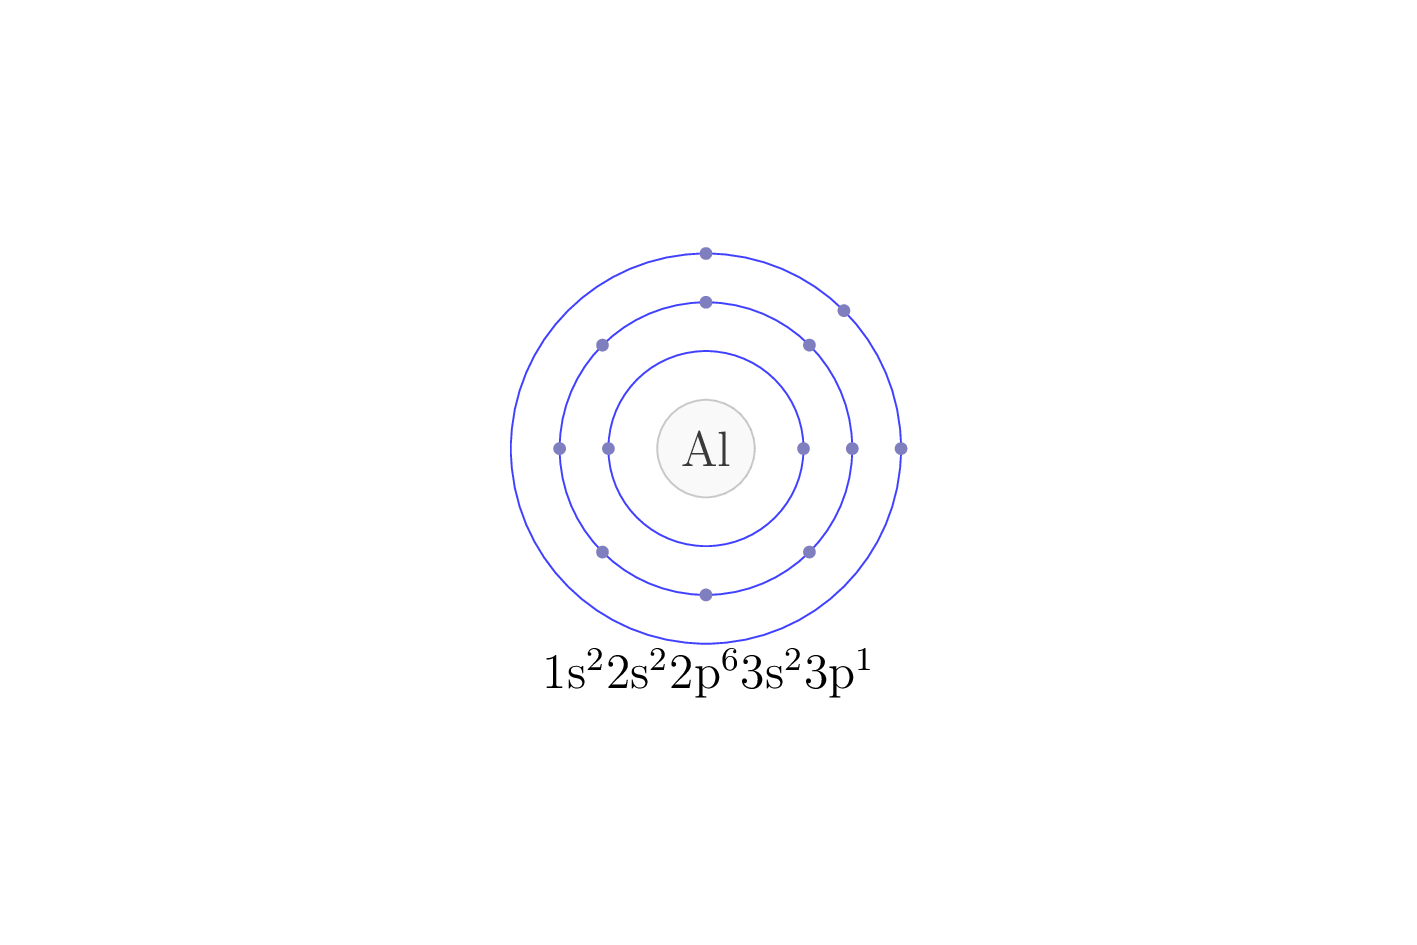 electron configuration of element Al